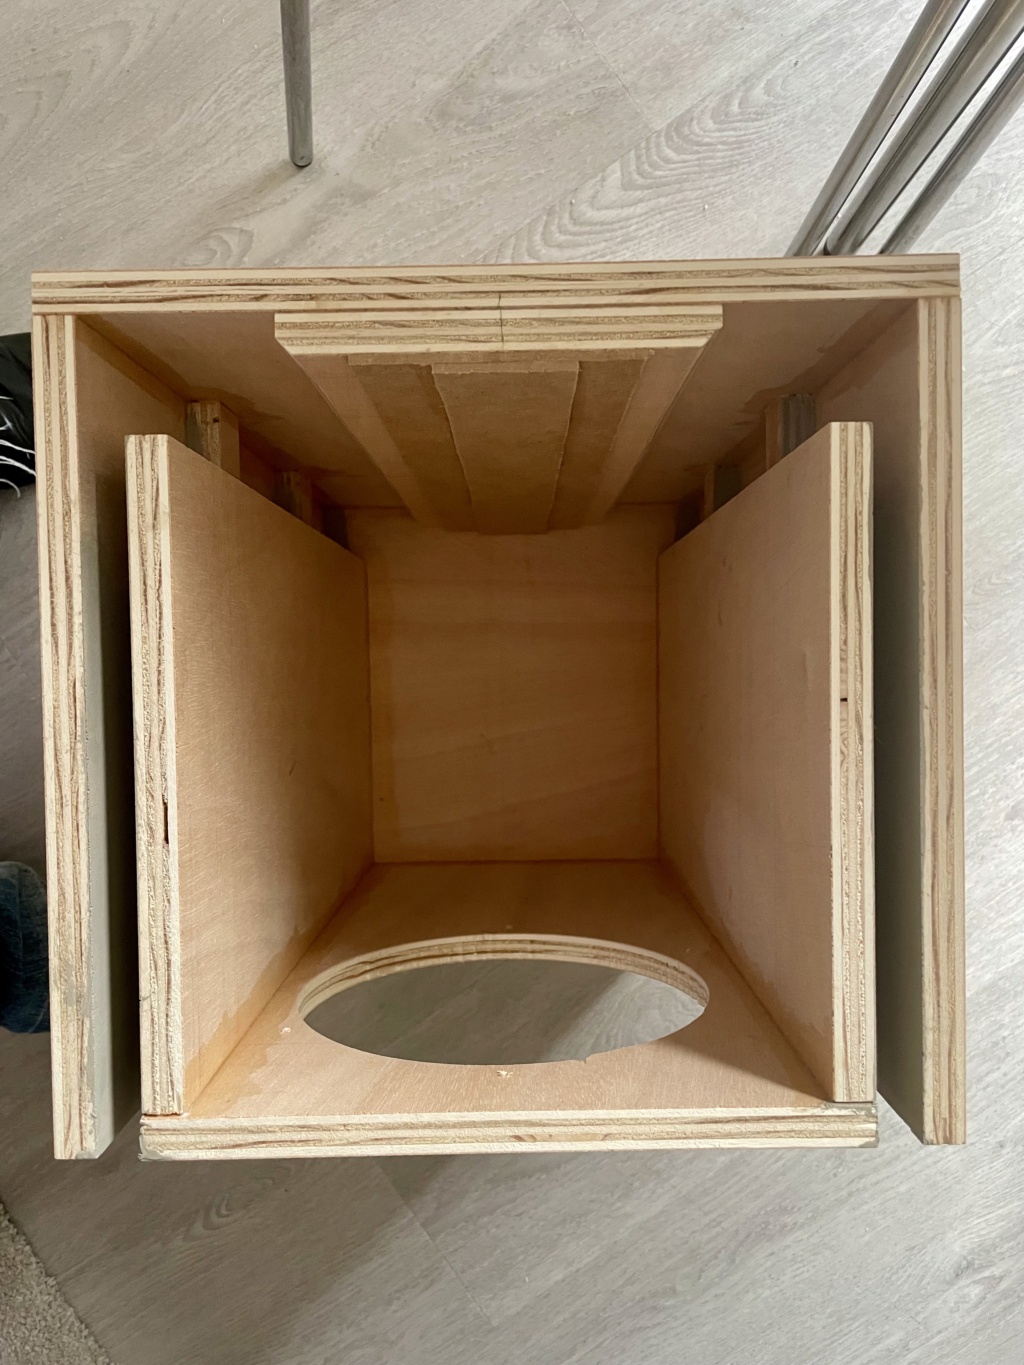 Proyecto cajas tipo estantería para Lii Silver 8” muuucho mejor de lo esperado.  - Página 3 Img_1113